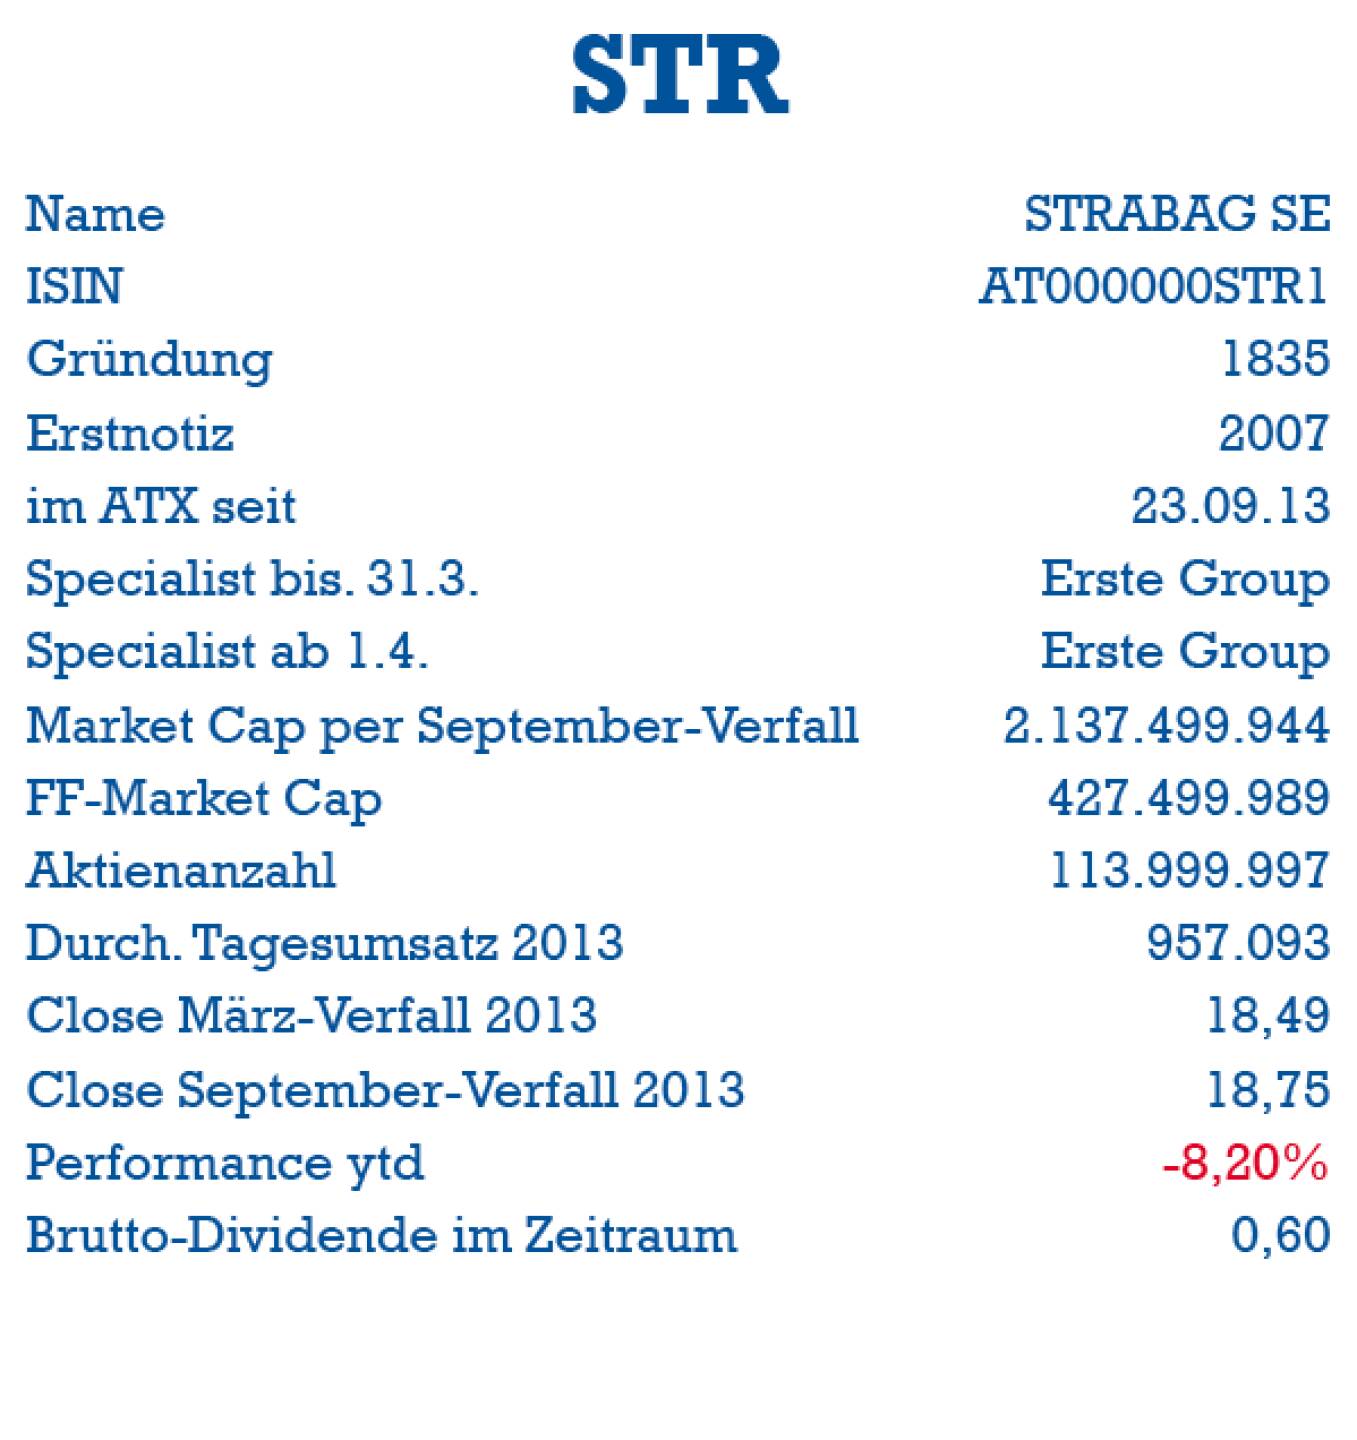 Strabag: ISIN, Gründung, Erstnotiz, ATX-Start, Specialist, Market Cap, Handelsvolumen, Dividende